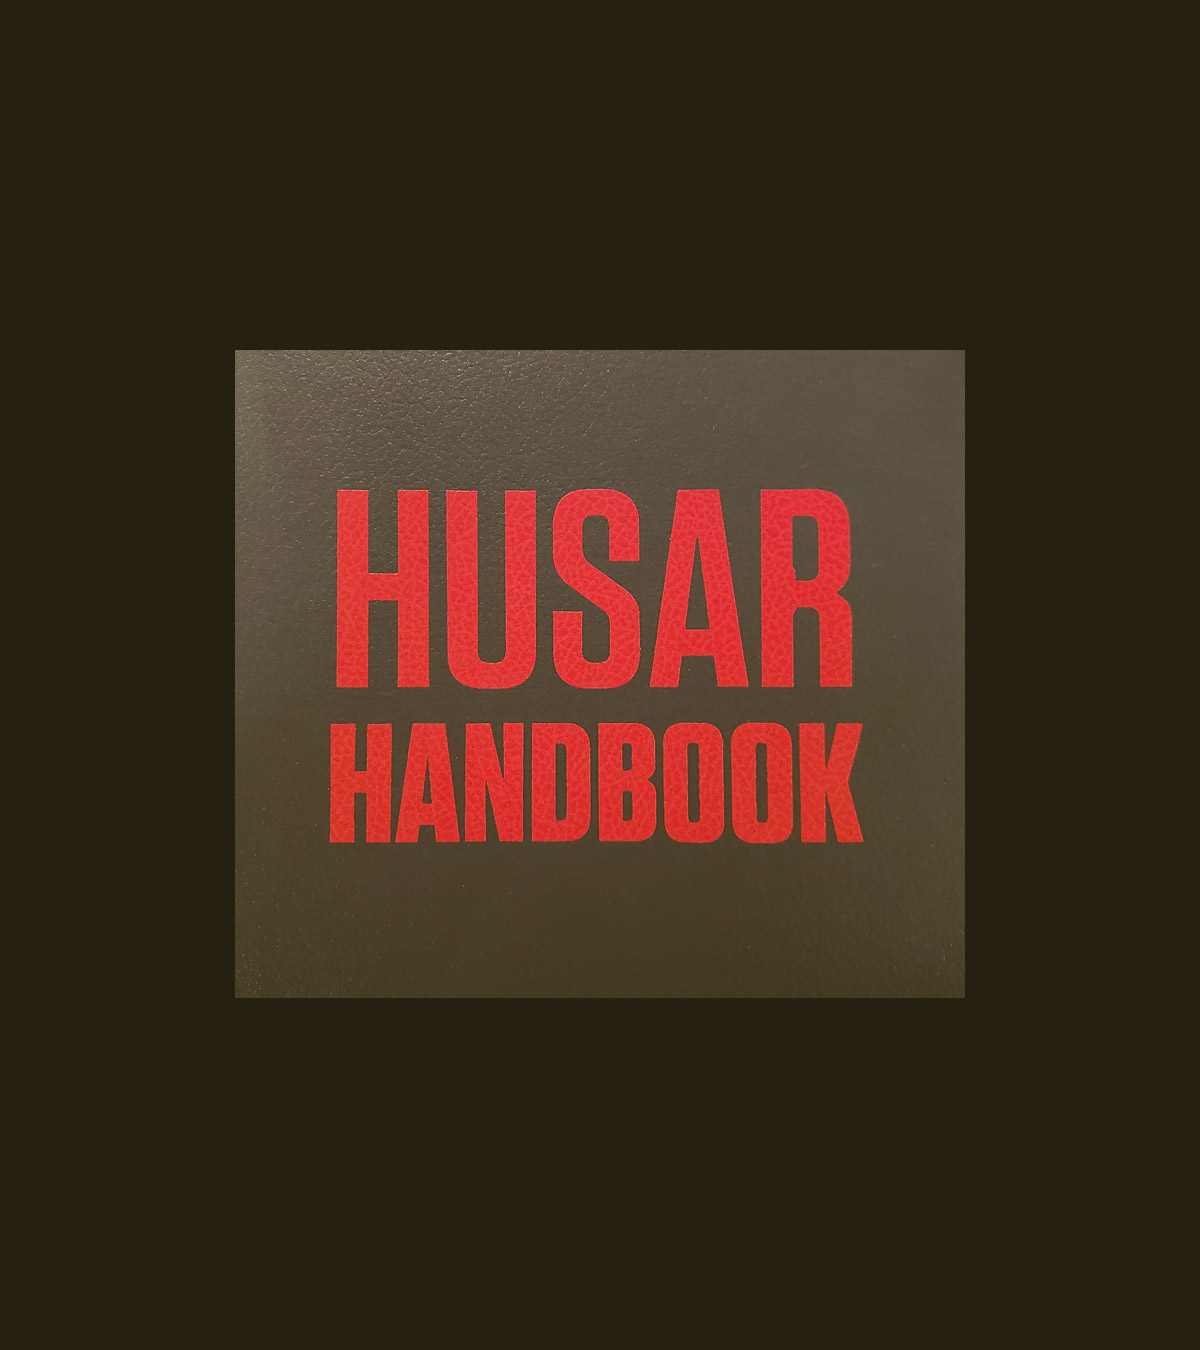 Logo for Husar handbook